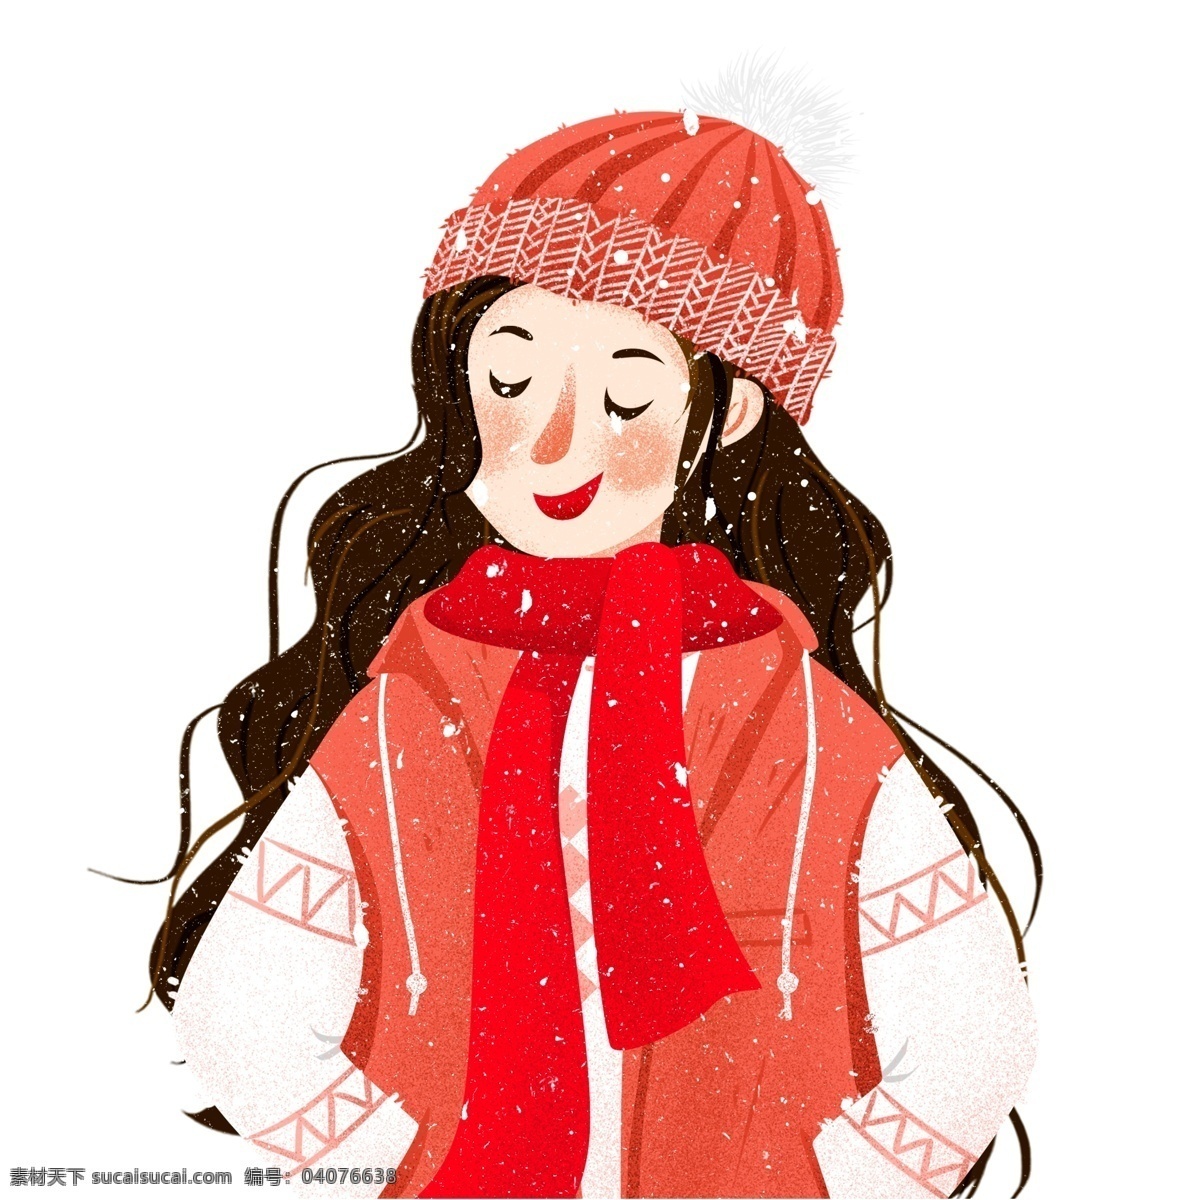 卡通 可爱 手 插 口袋 女孩 商用 元素 人物 冬季 雪花 少女 手插口袋